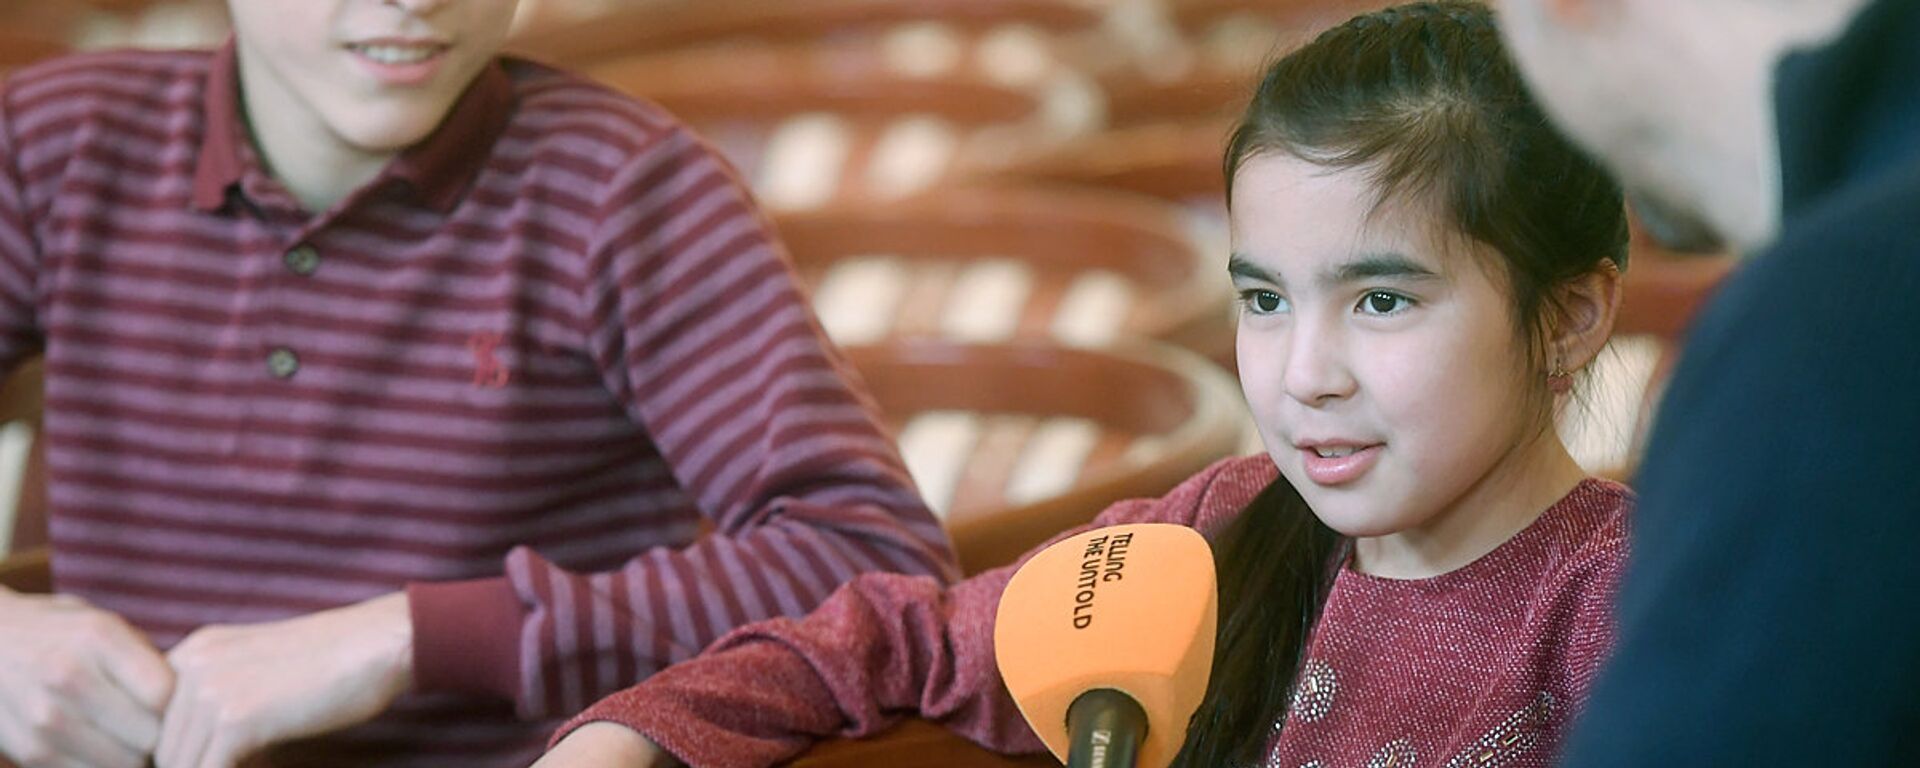 Участники проекта Ты супер! из Узбекистана во время интервью - Sputnik Узбекистан, 1920, 16.02.2018